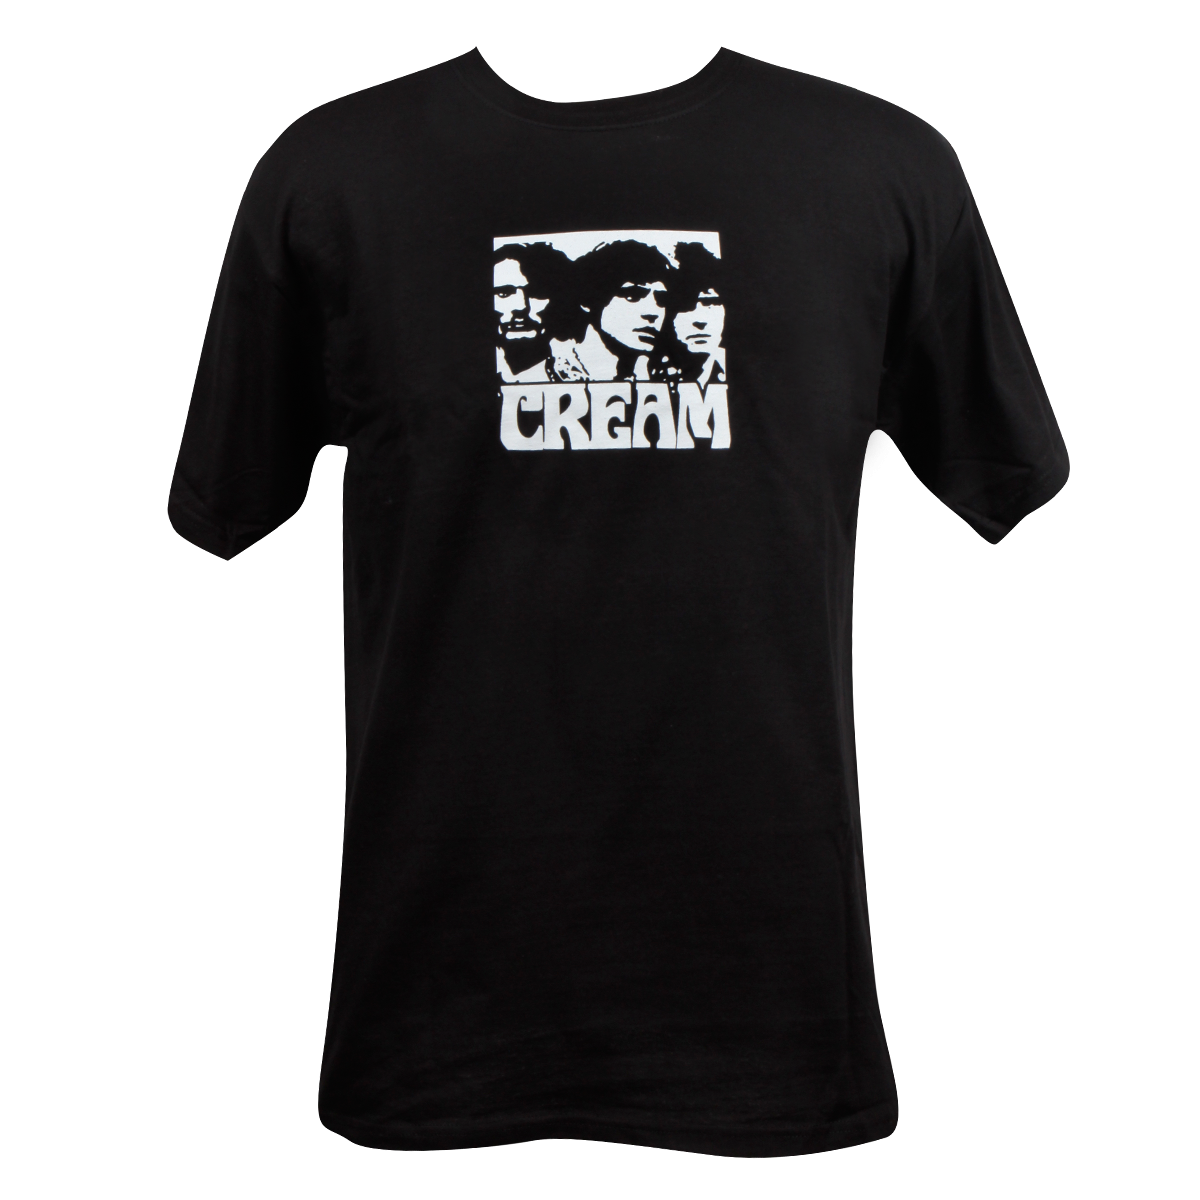 Black T Shirt Design PNG Transparent Images Free Download